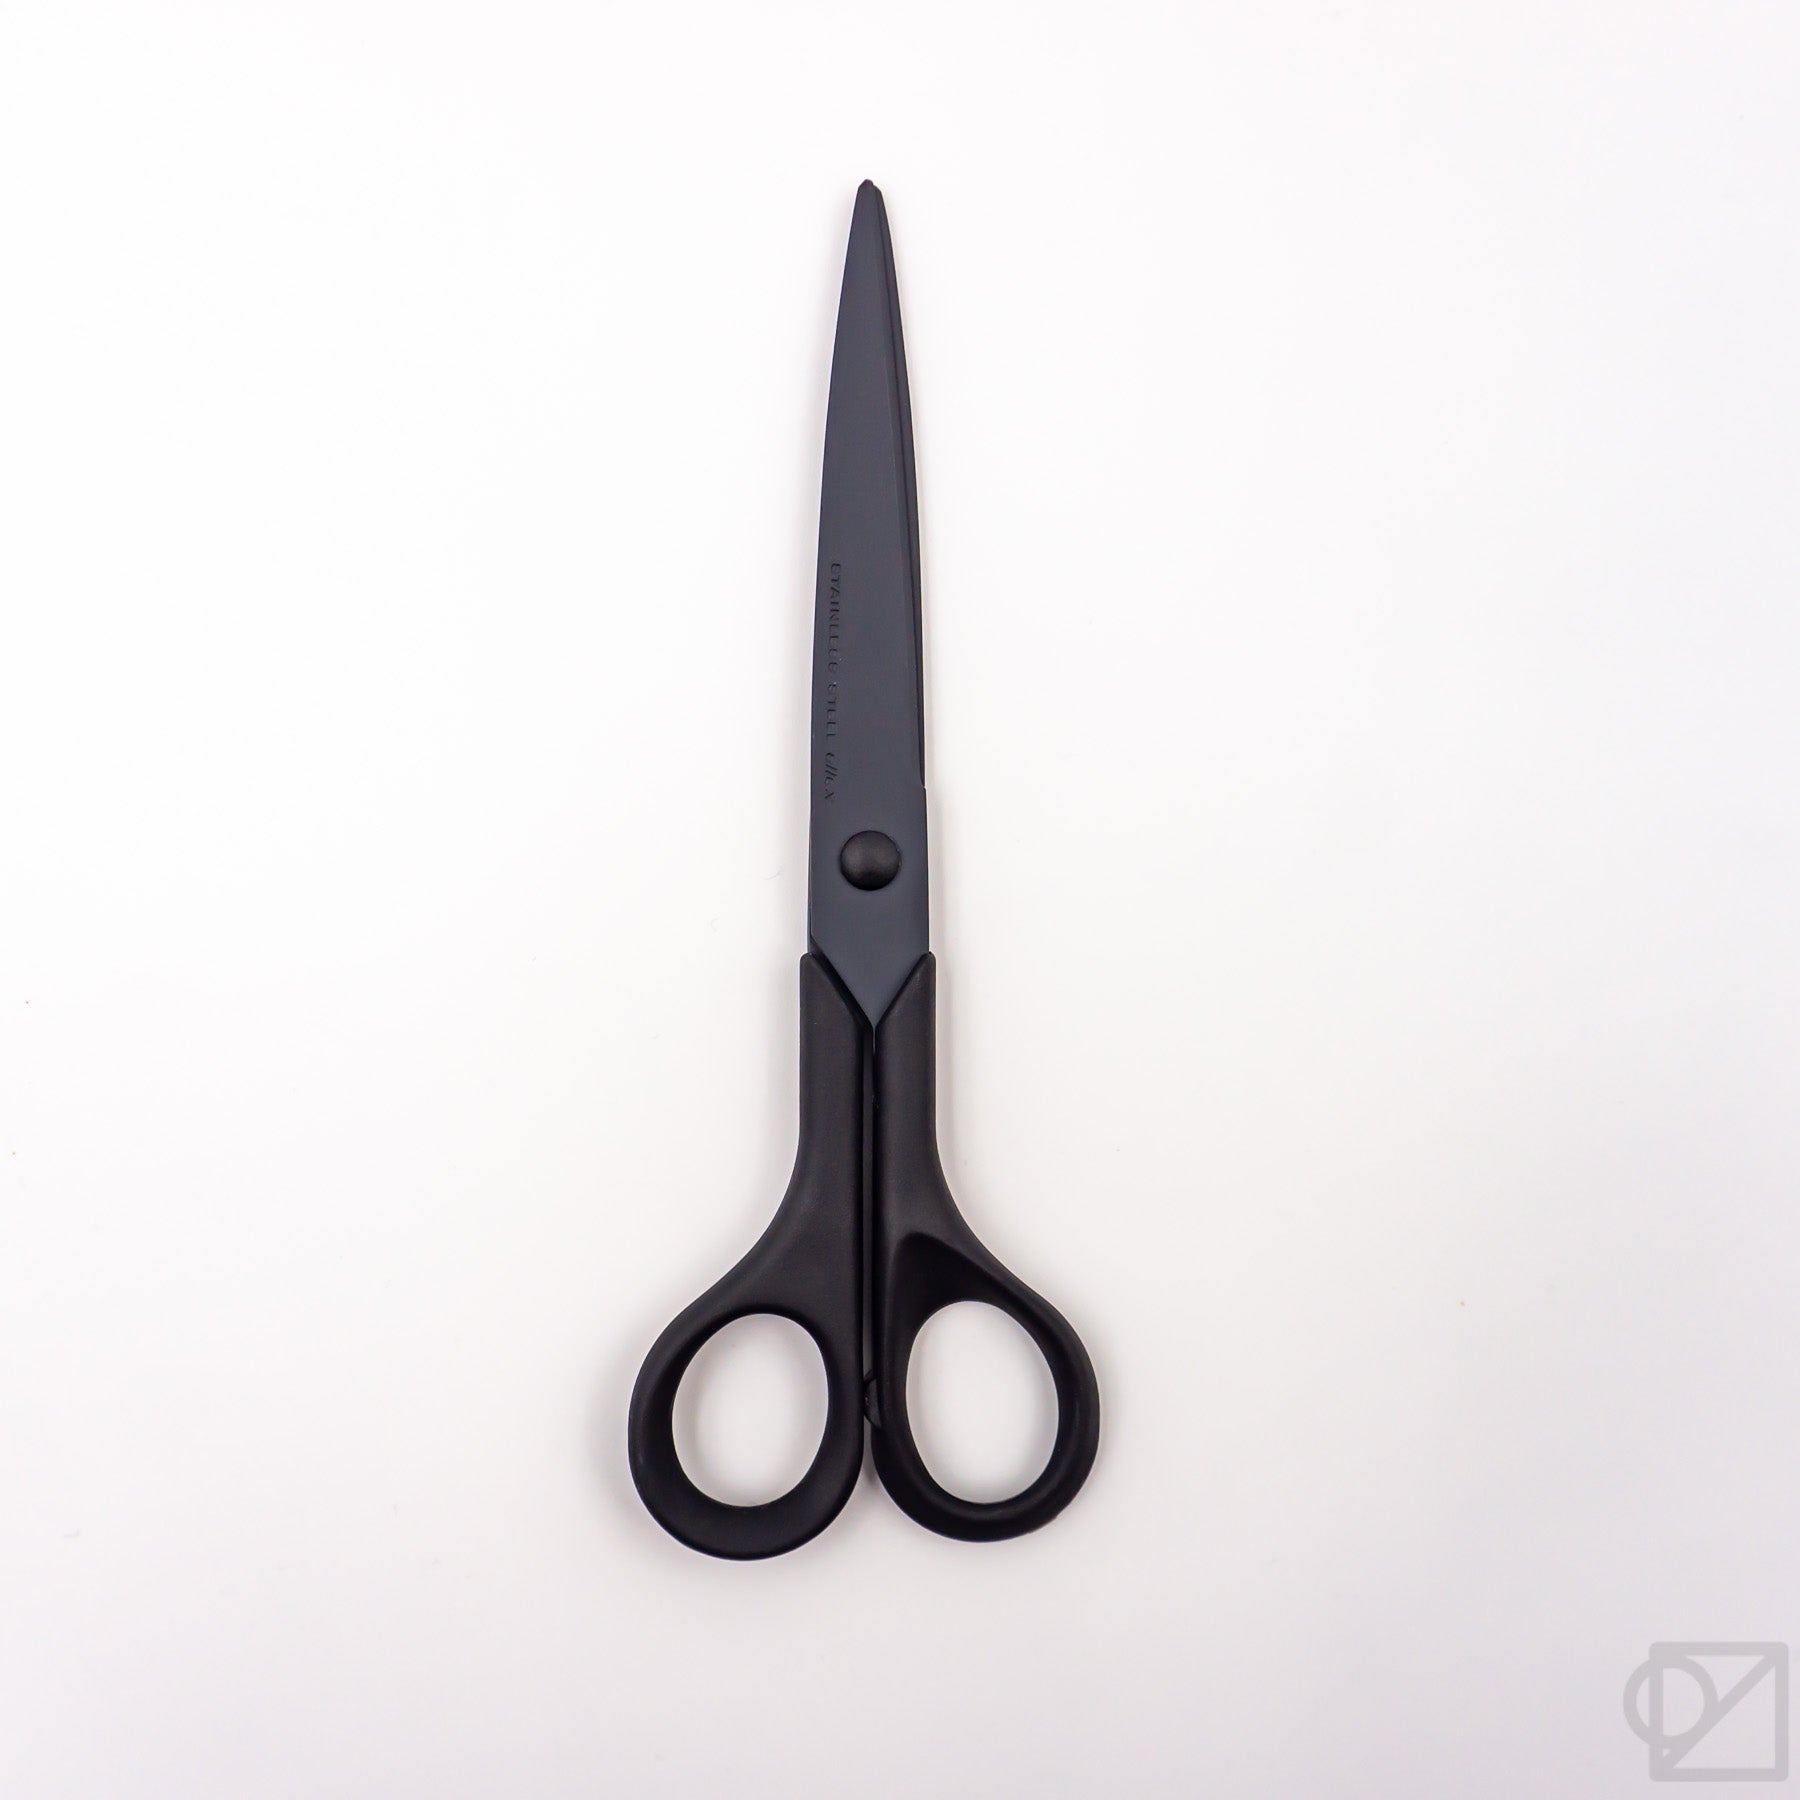 Allex Stainless Steel Scissors Black